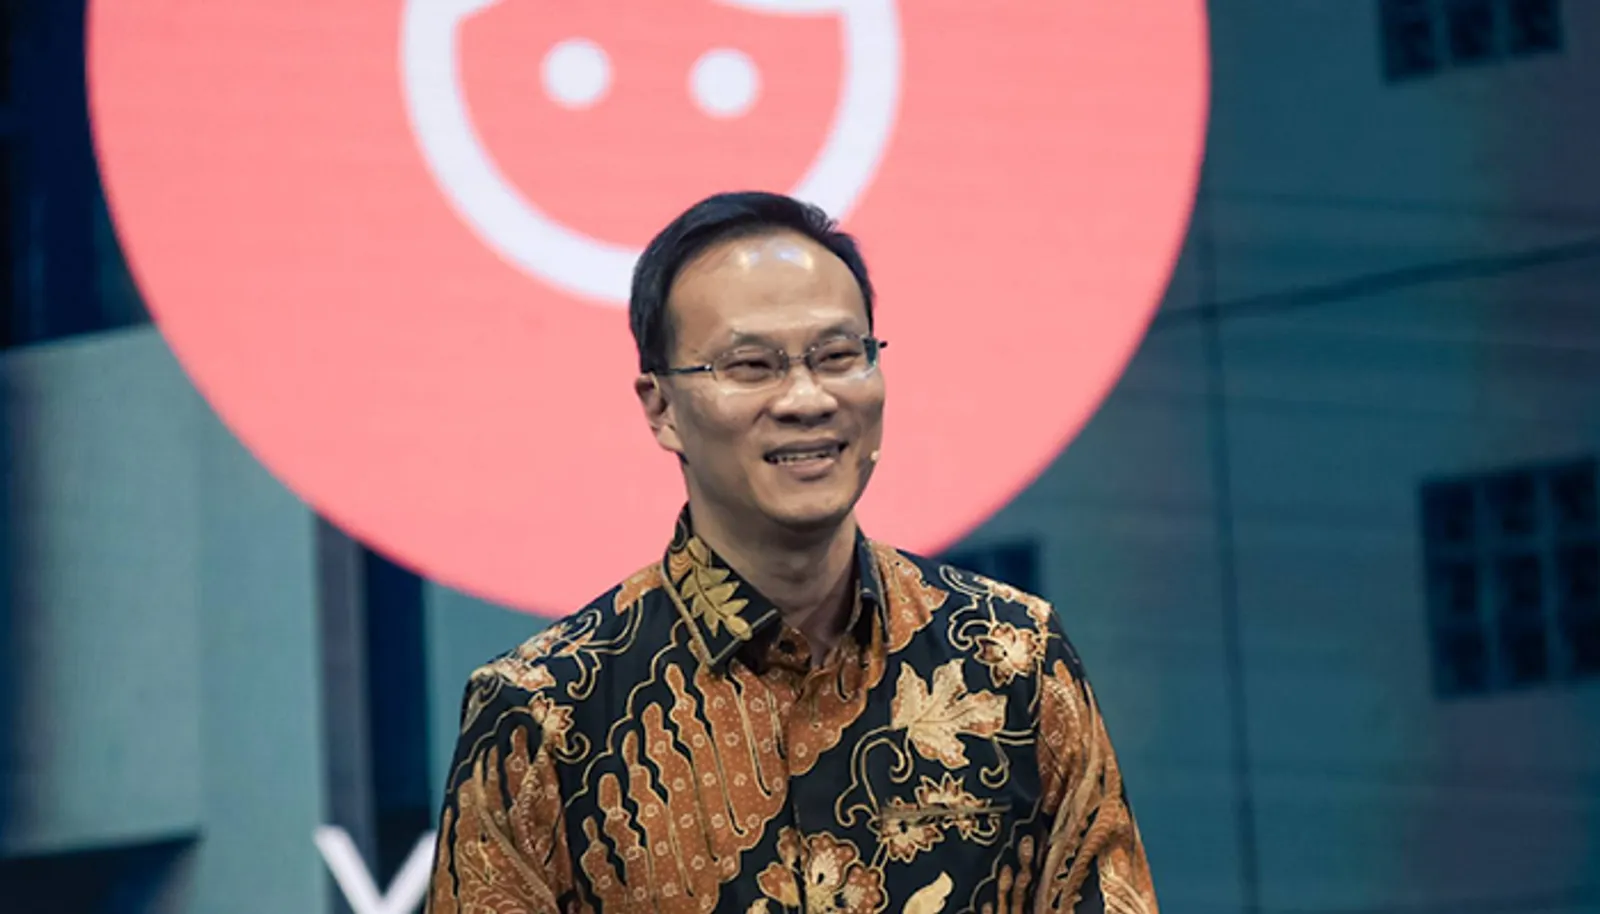 #Google4ID Inisiasi Google Bantu Indonesia Bangkit di Tengah Pandemi